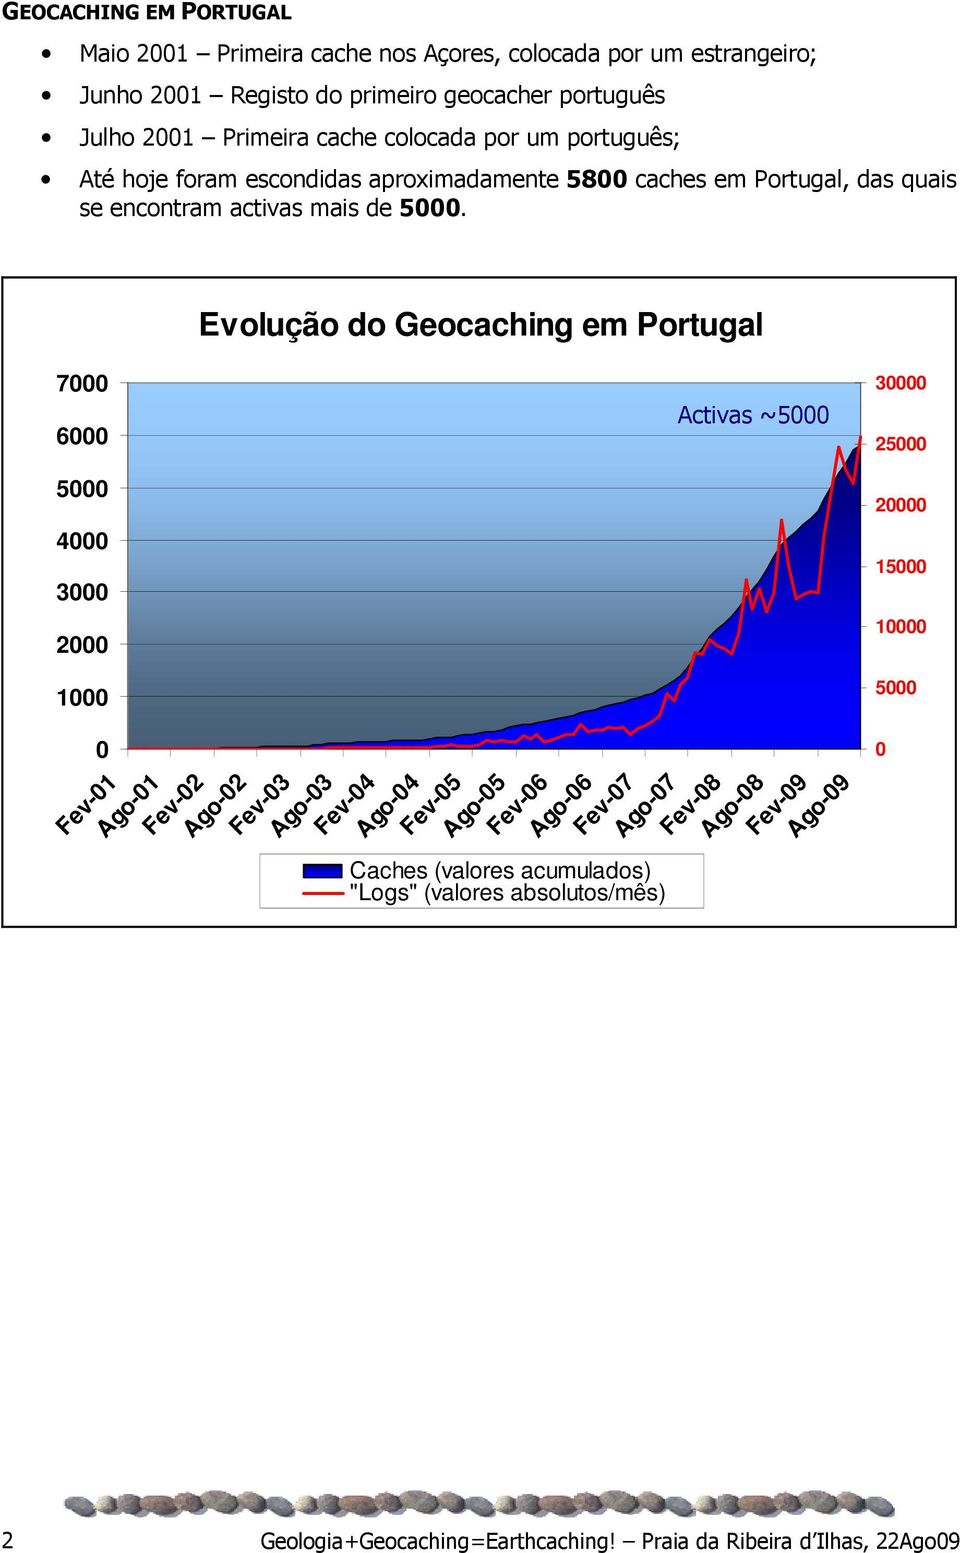 Evolução do Geocaching em Portugal 7000 6000 Activas ~5000 30000 25000 5000 20000 4000 3000 2000 1000 0 Fev-01 Ago-01 Fev-02 Ago-02 Fev-03 Ago-03 Fev-04 Ago-04 Caches